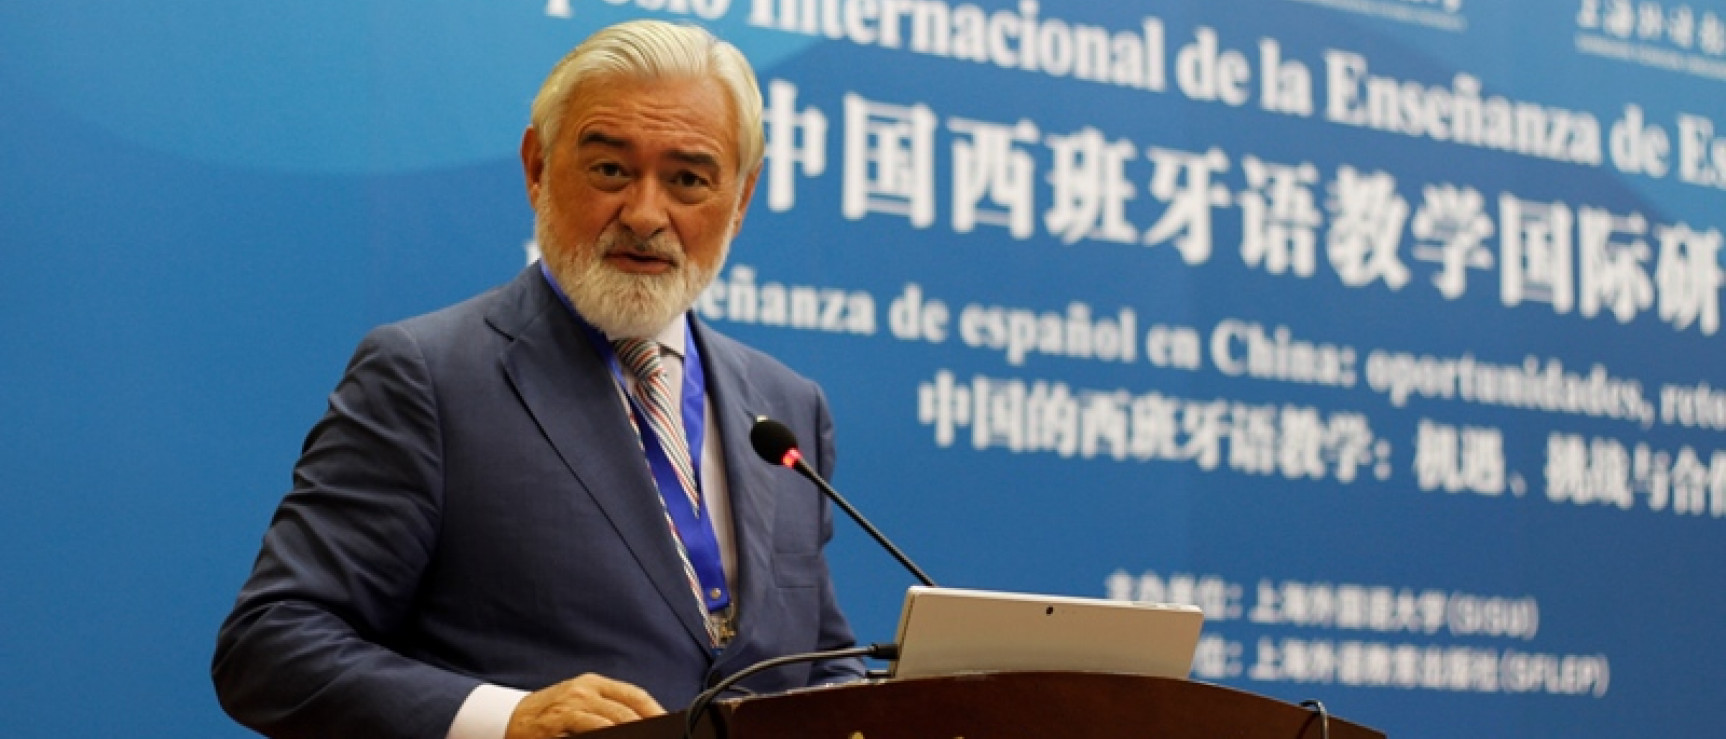 Darío Villanueva interviene en la clausura del Simposio Internacional de Enseñanza de Español en China.